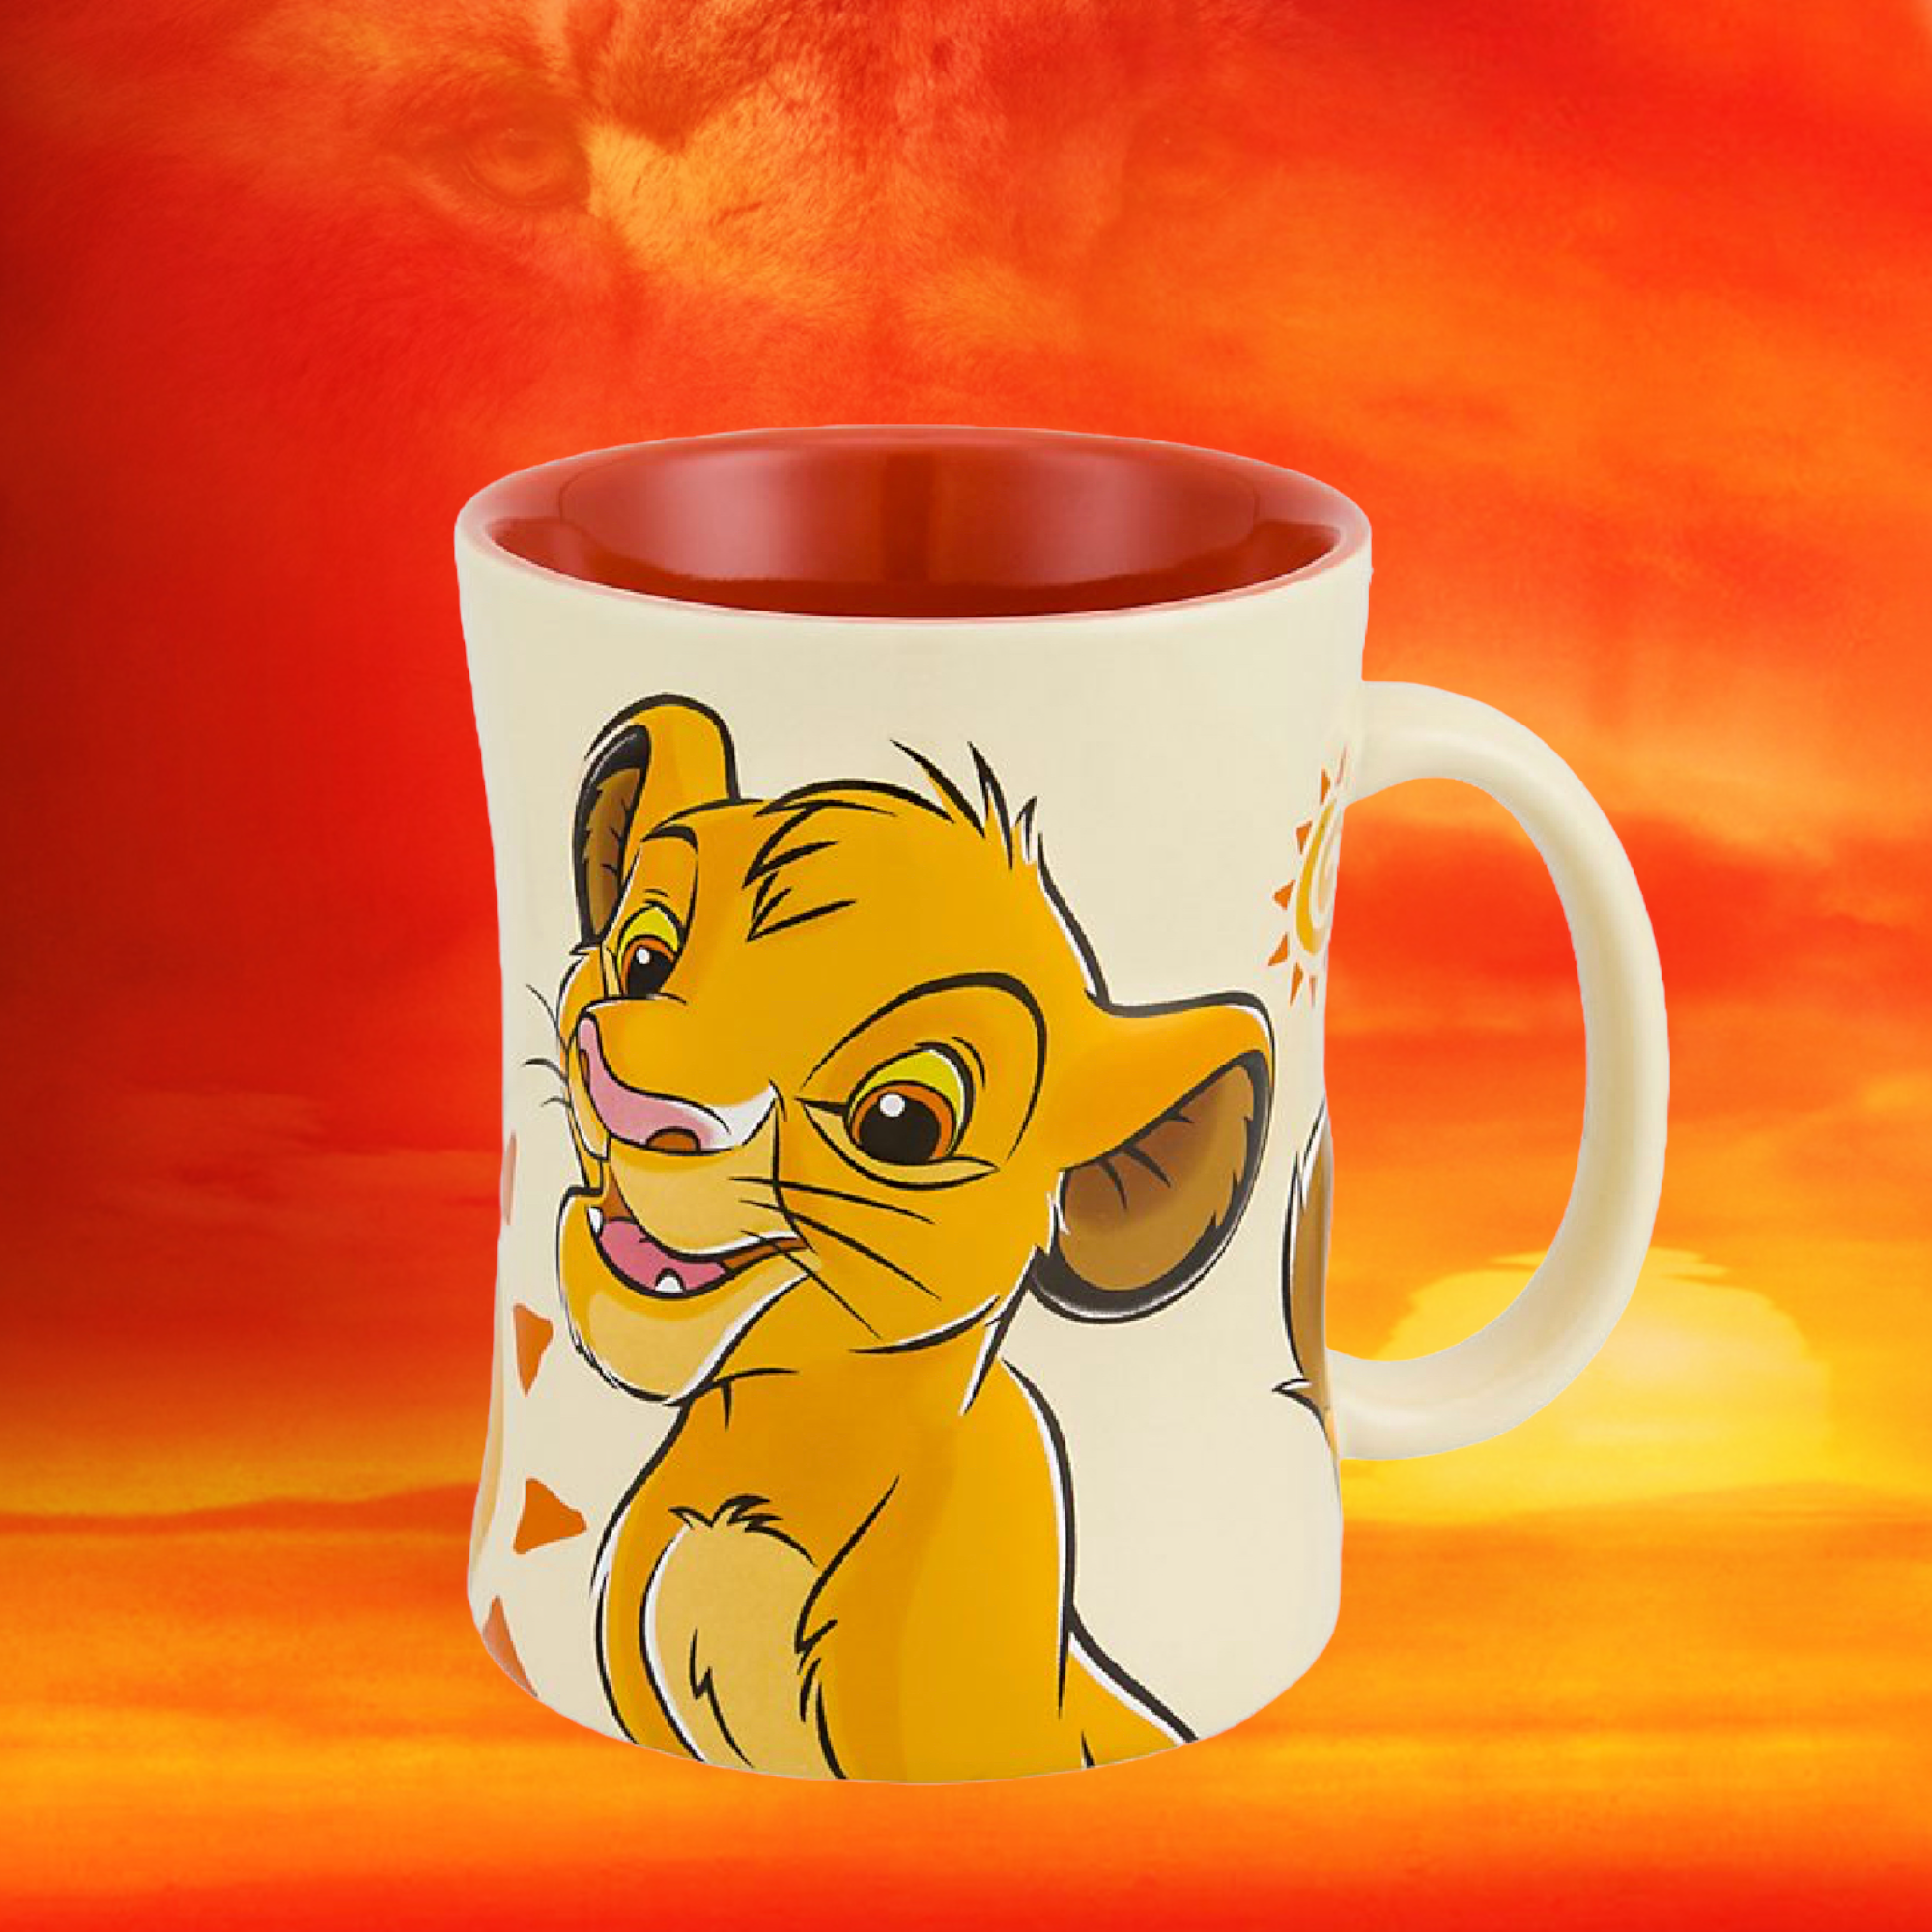 Disney - Le roi lion : Mug Simba